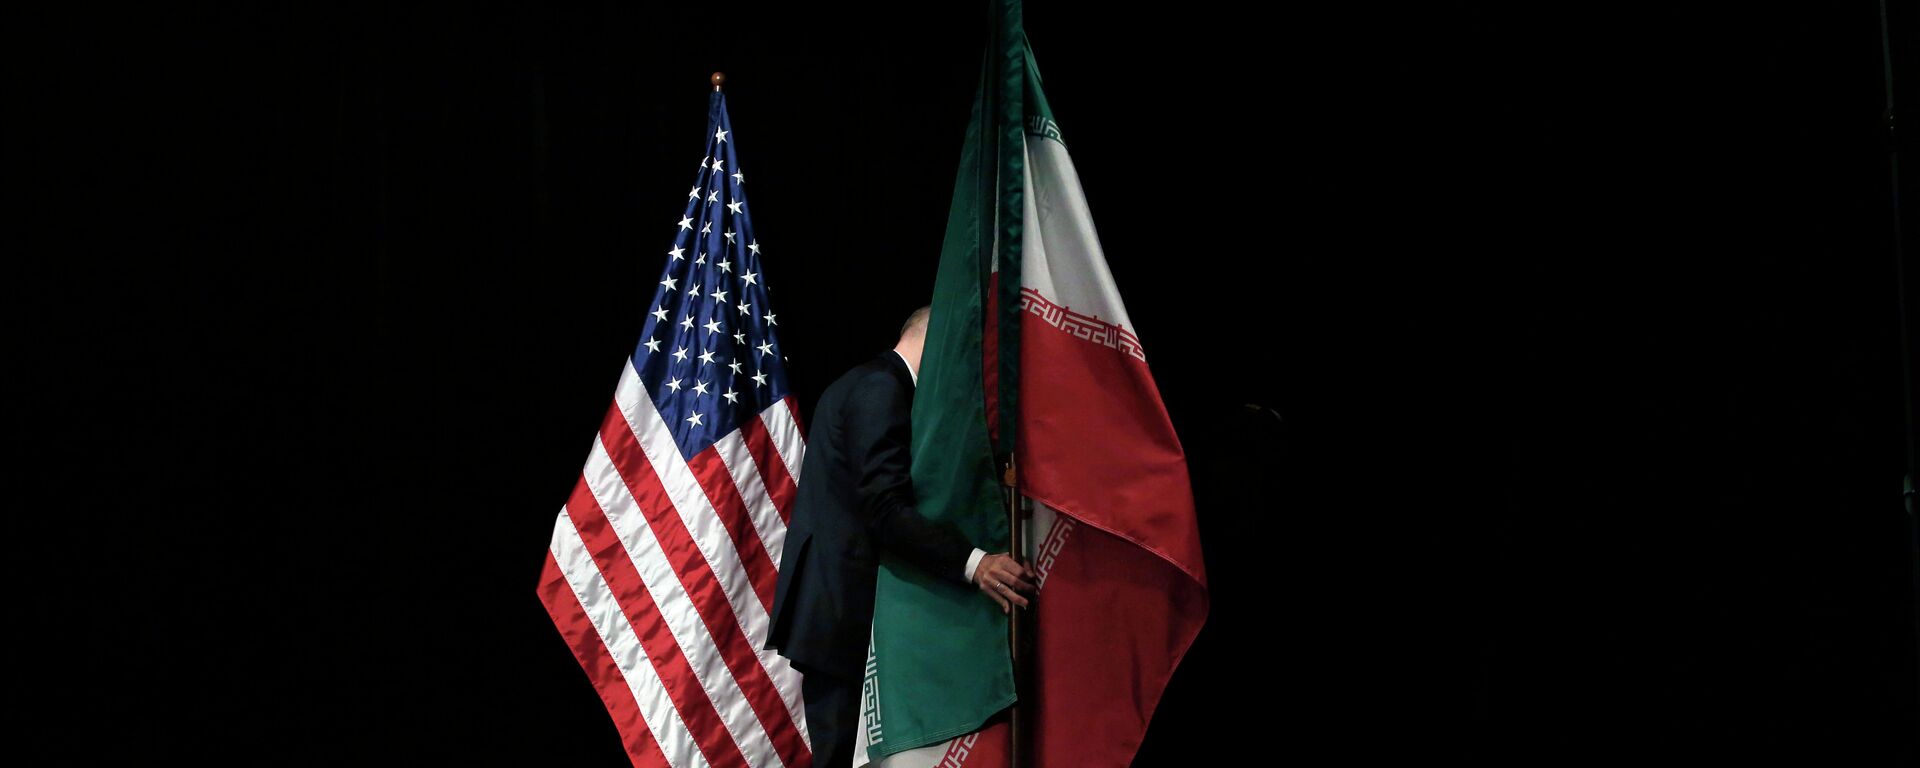 Banderas de EEUU e Irán - Sputnik Mundo, 1920, 02.08.2021